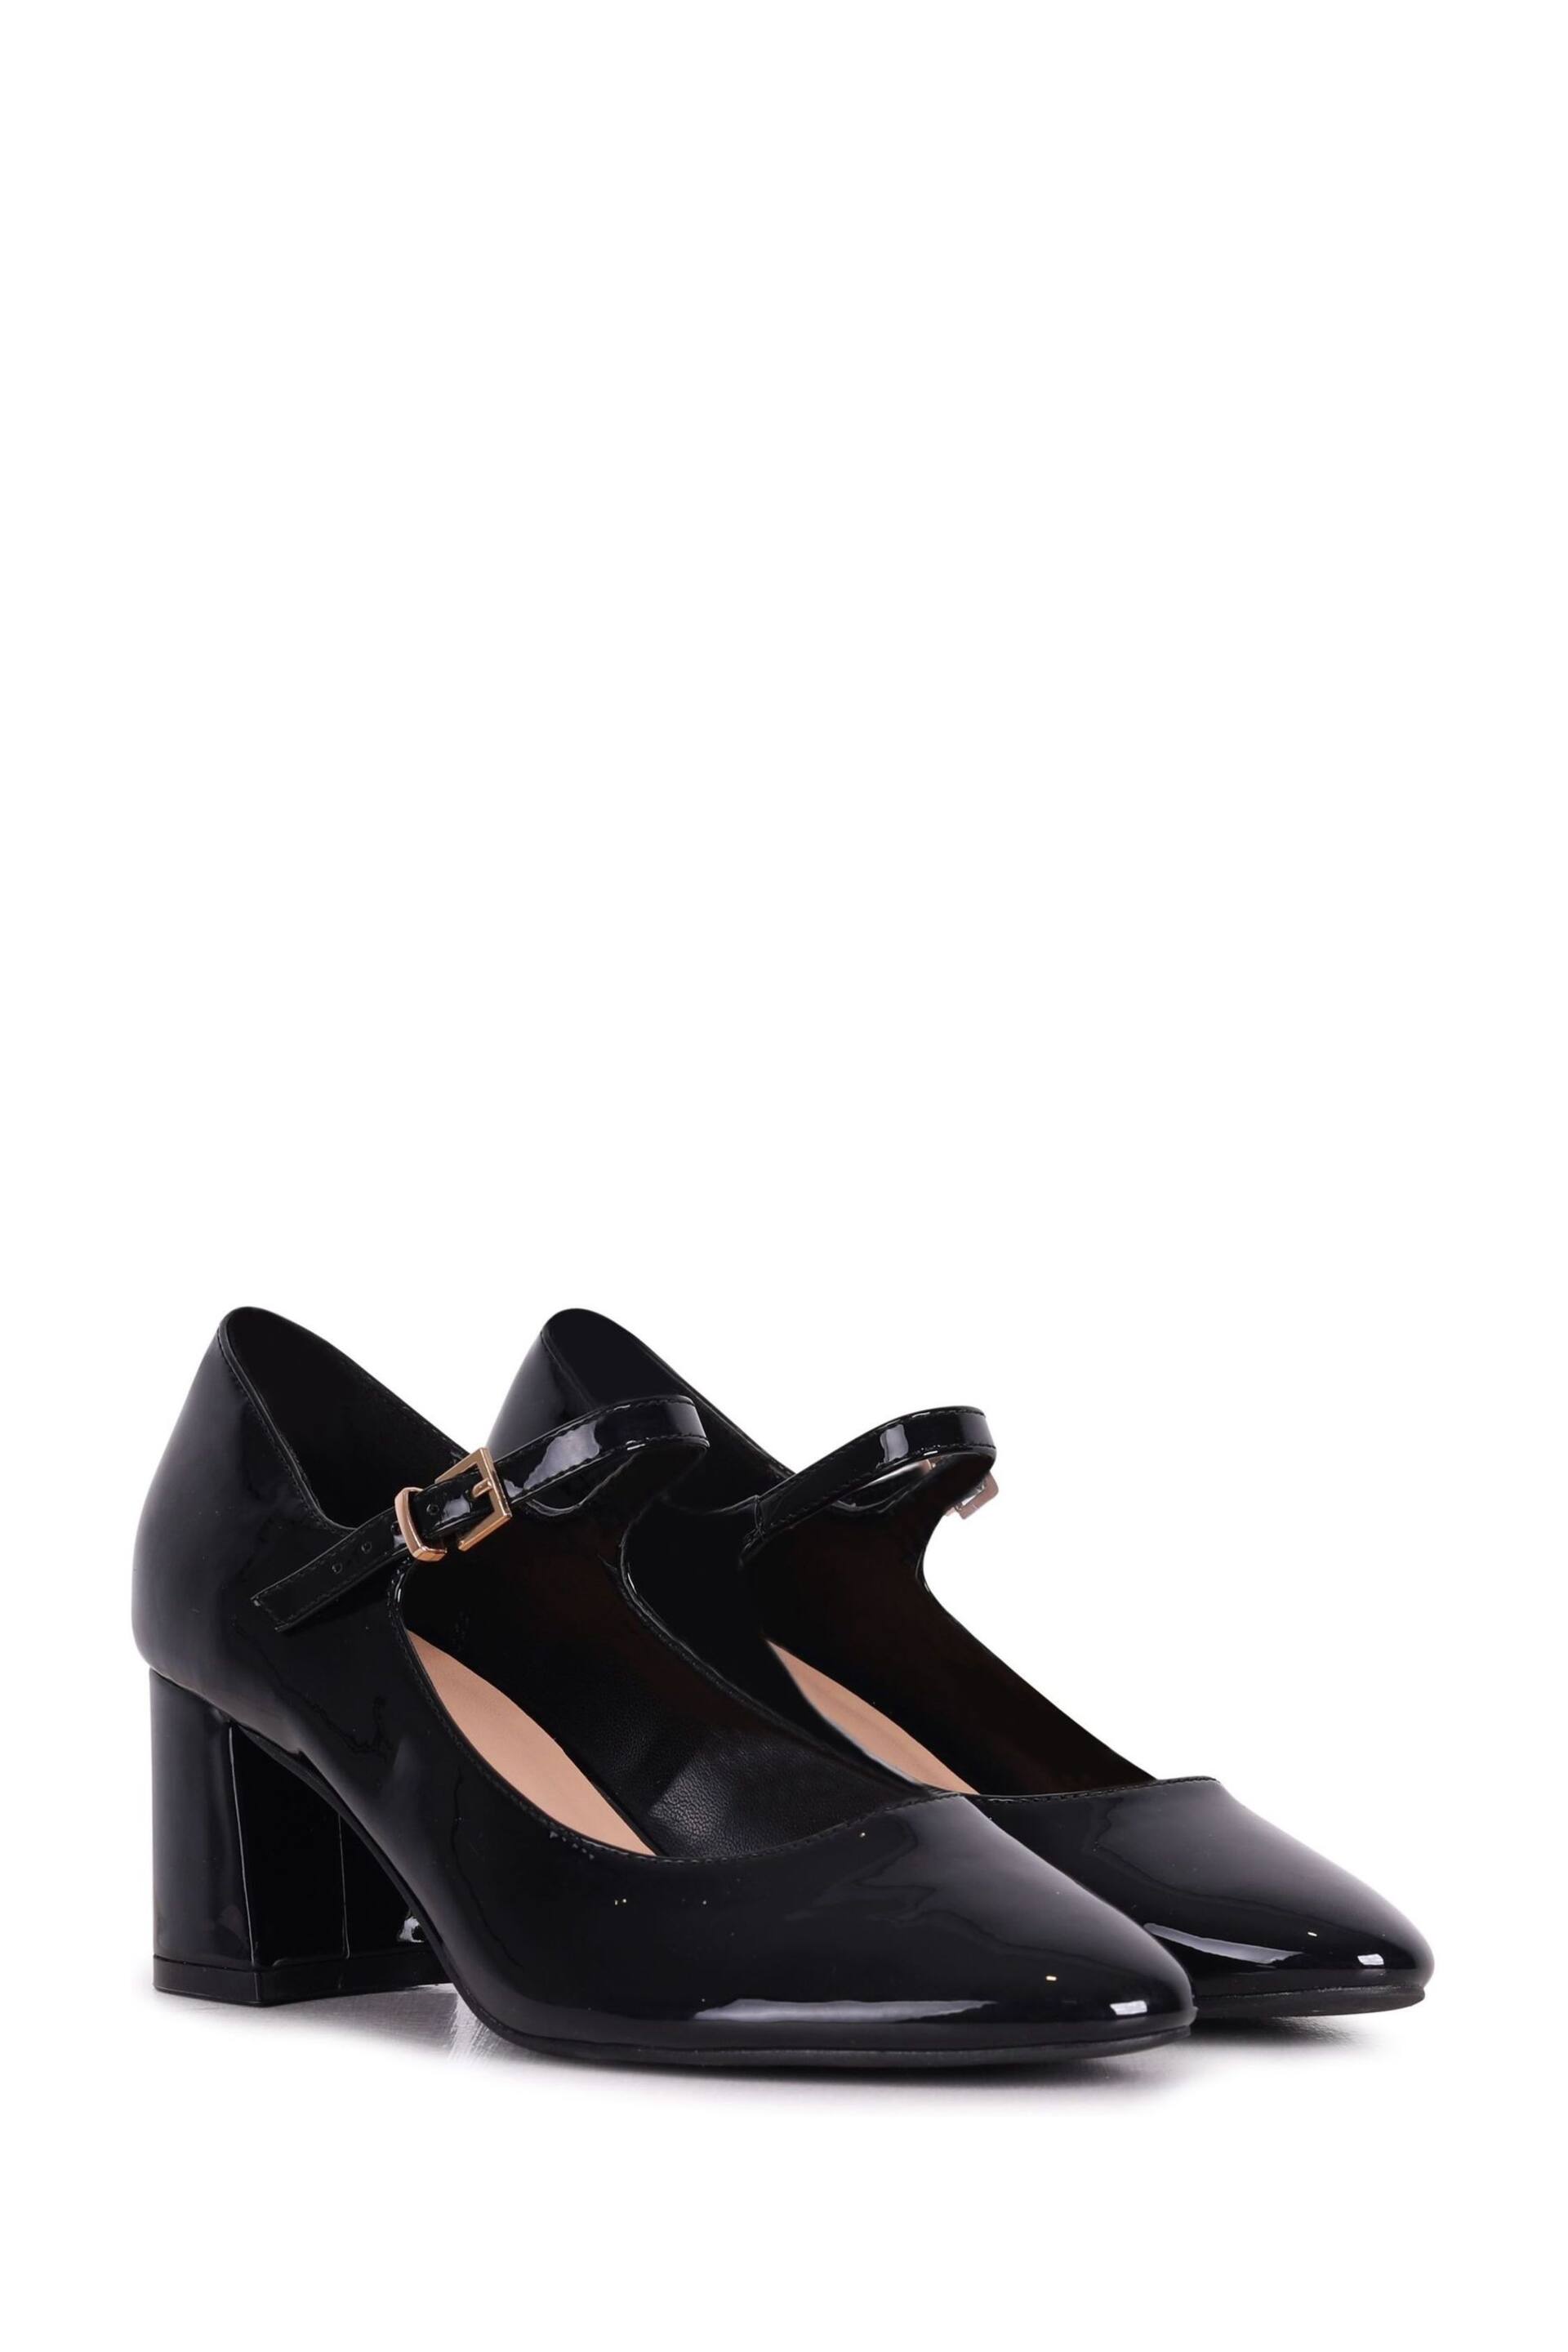 Linzi Black Patent Madeline Court Heel with Block Heels - Image 3 of 4